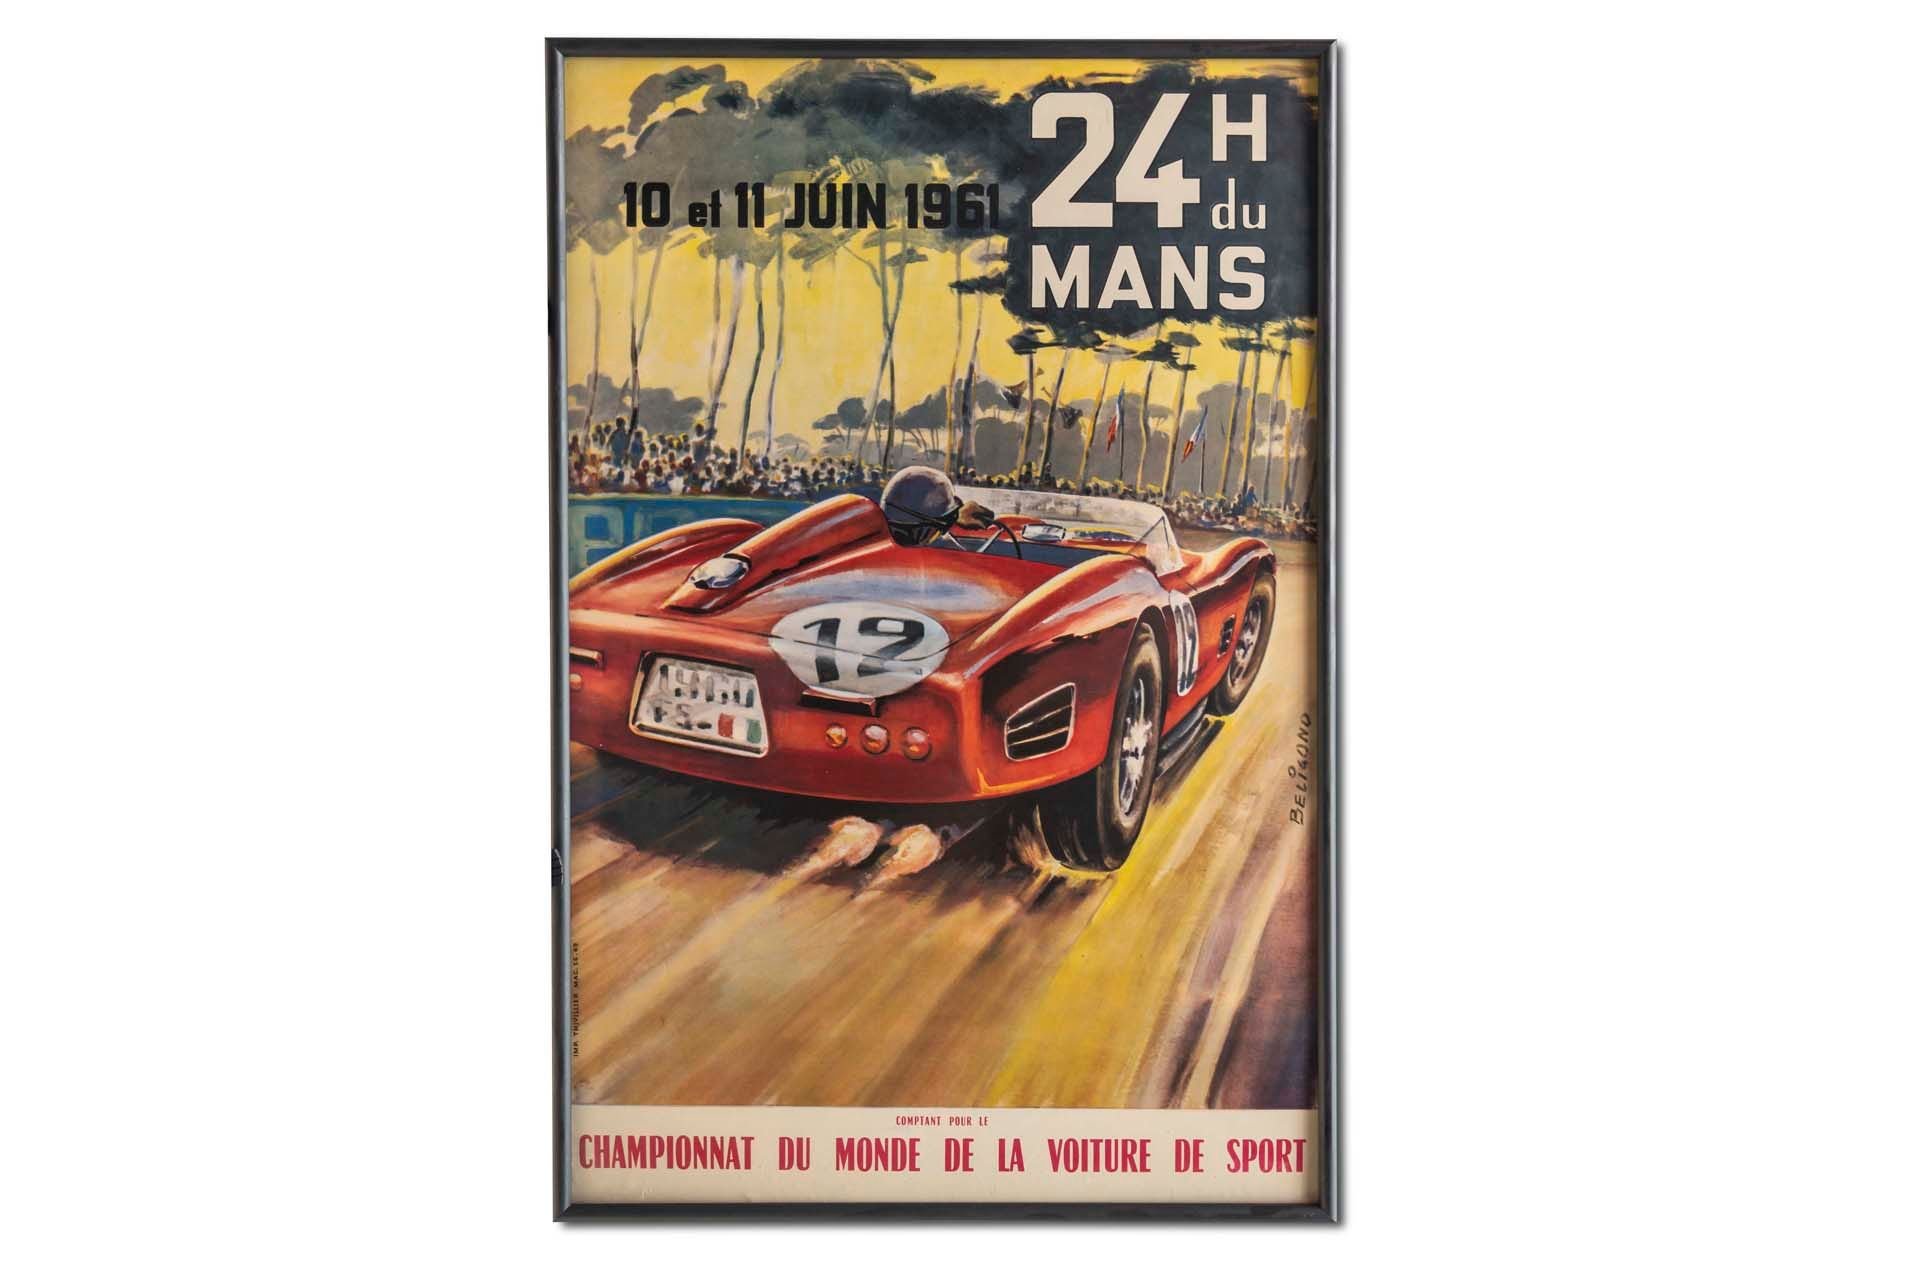 For Sale Framed Original '1961 24 heures du Mans' Event Poster